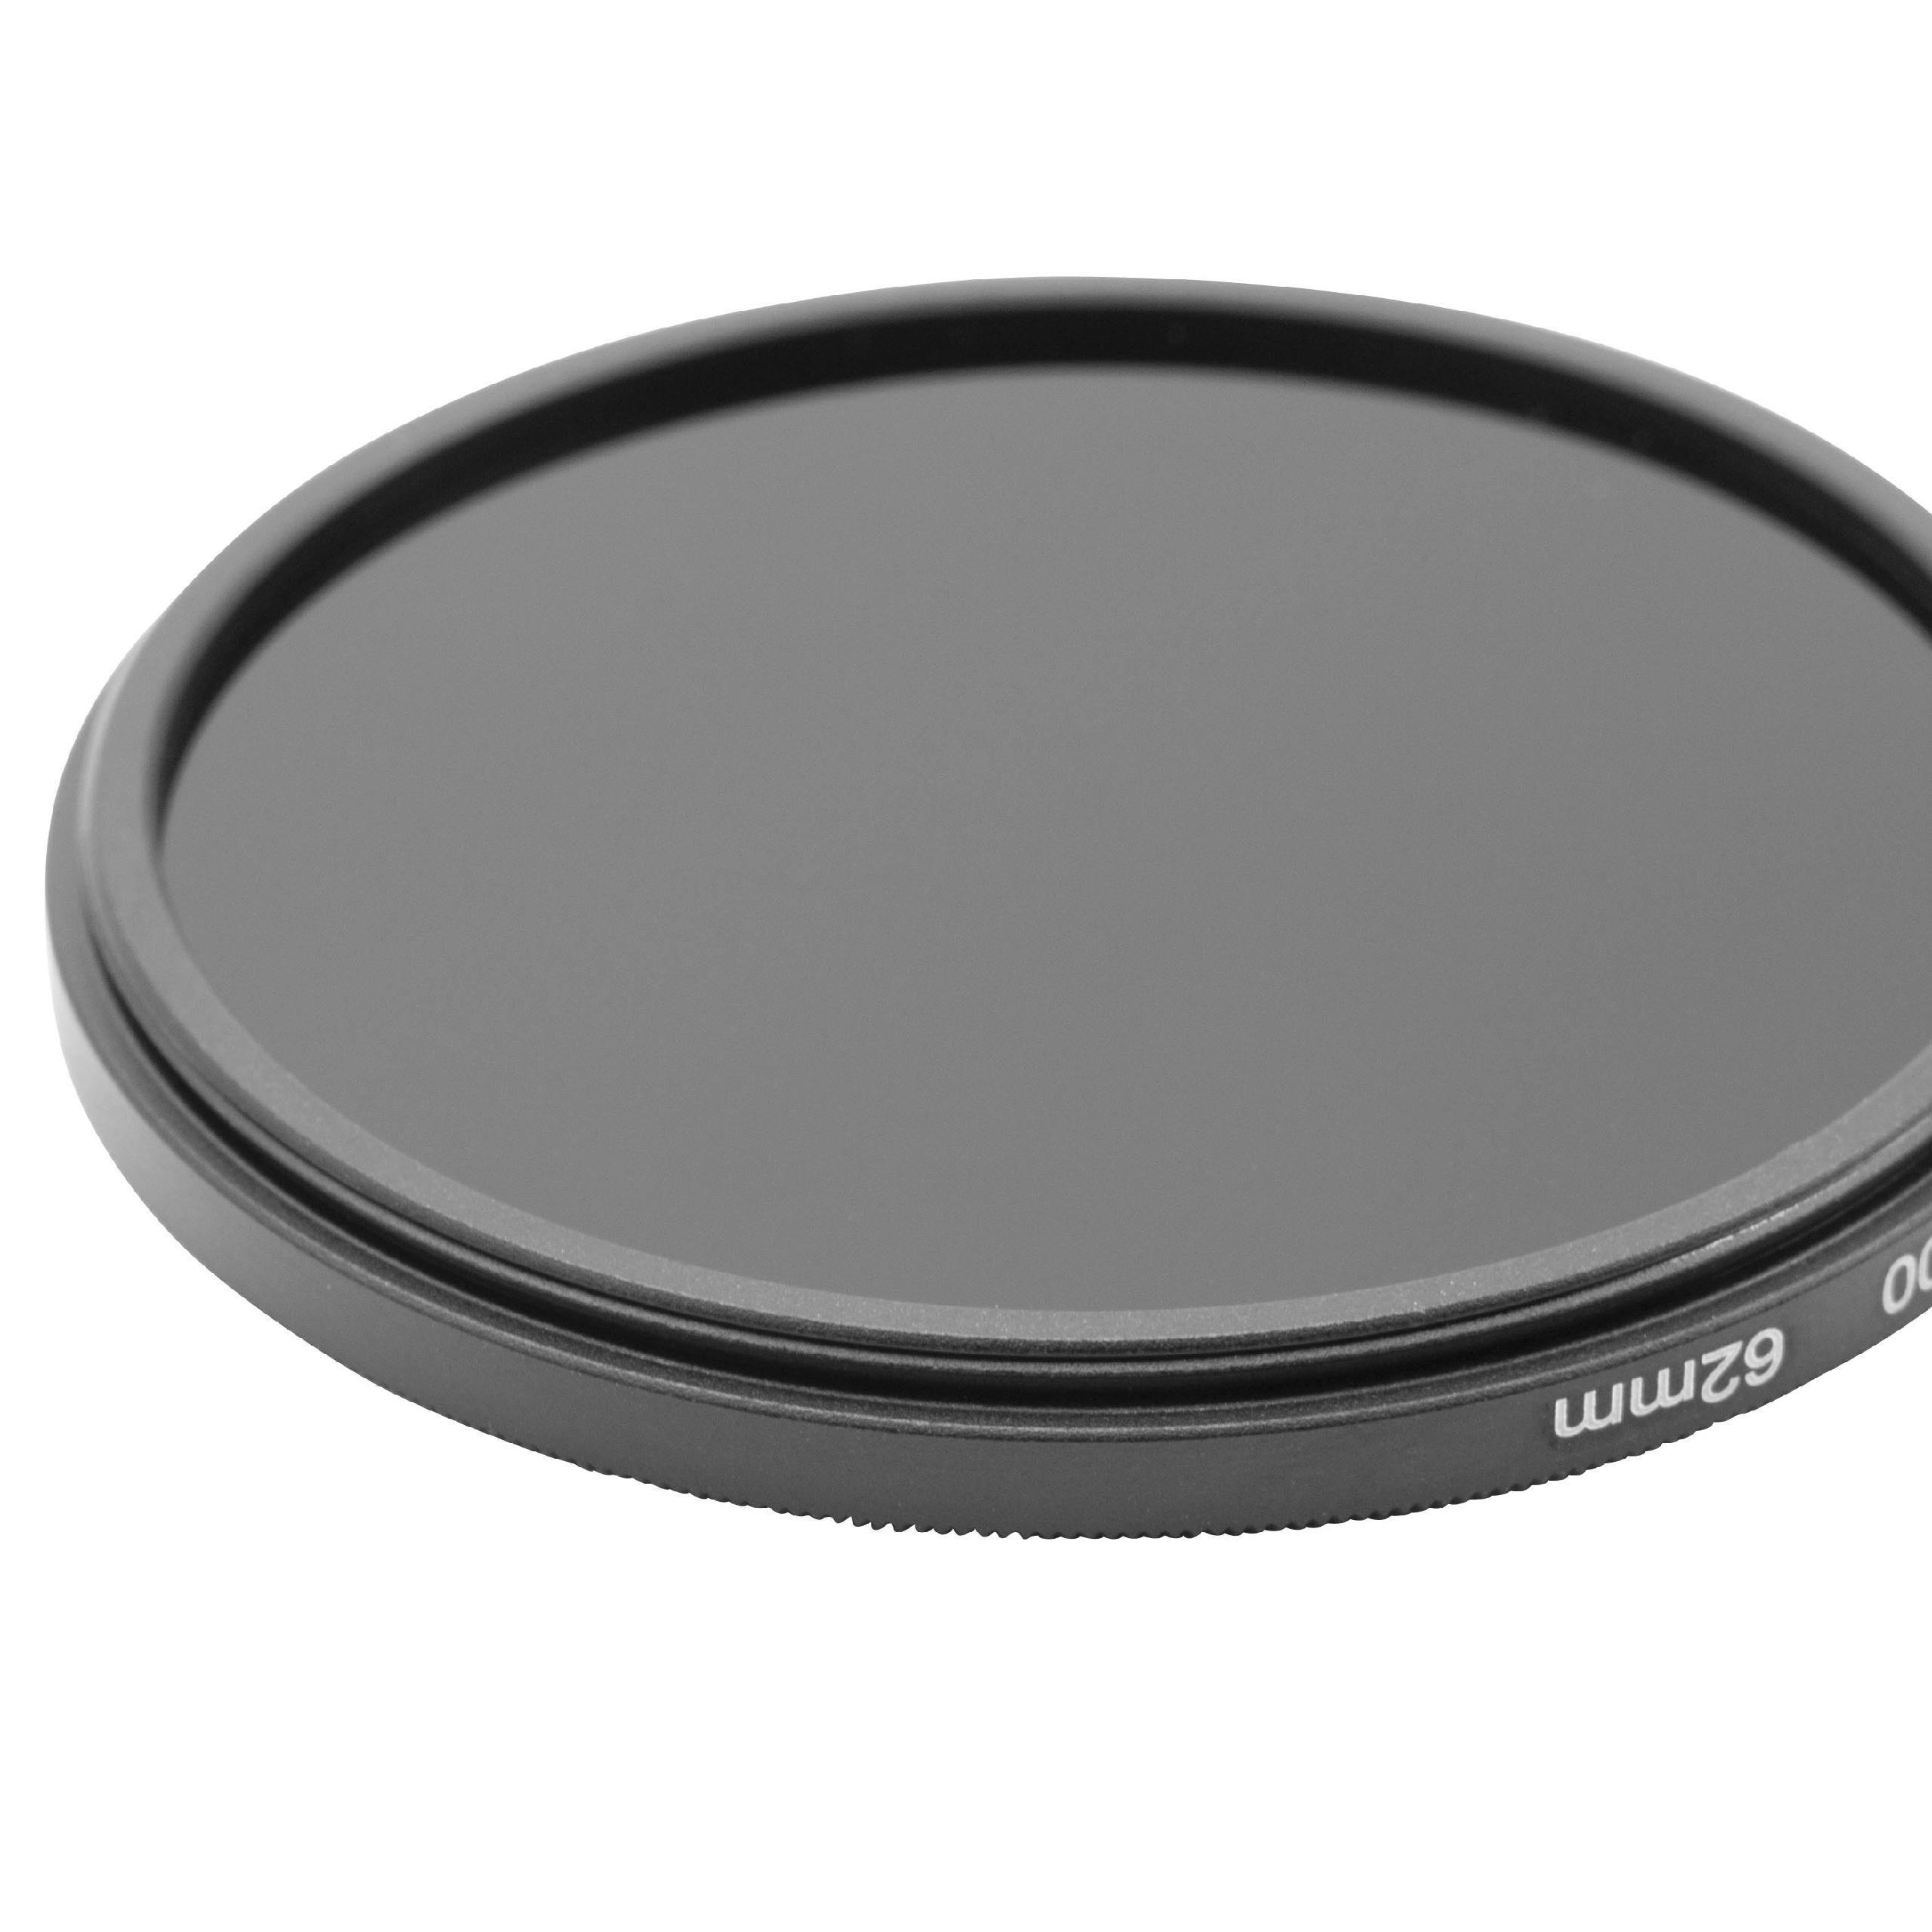 Filtro ND universal ND 2000 para objetivos de cámara con rosca de filtro de 62 mm - Filtro gris